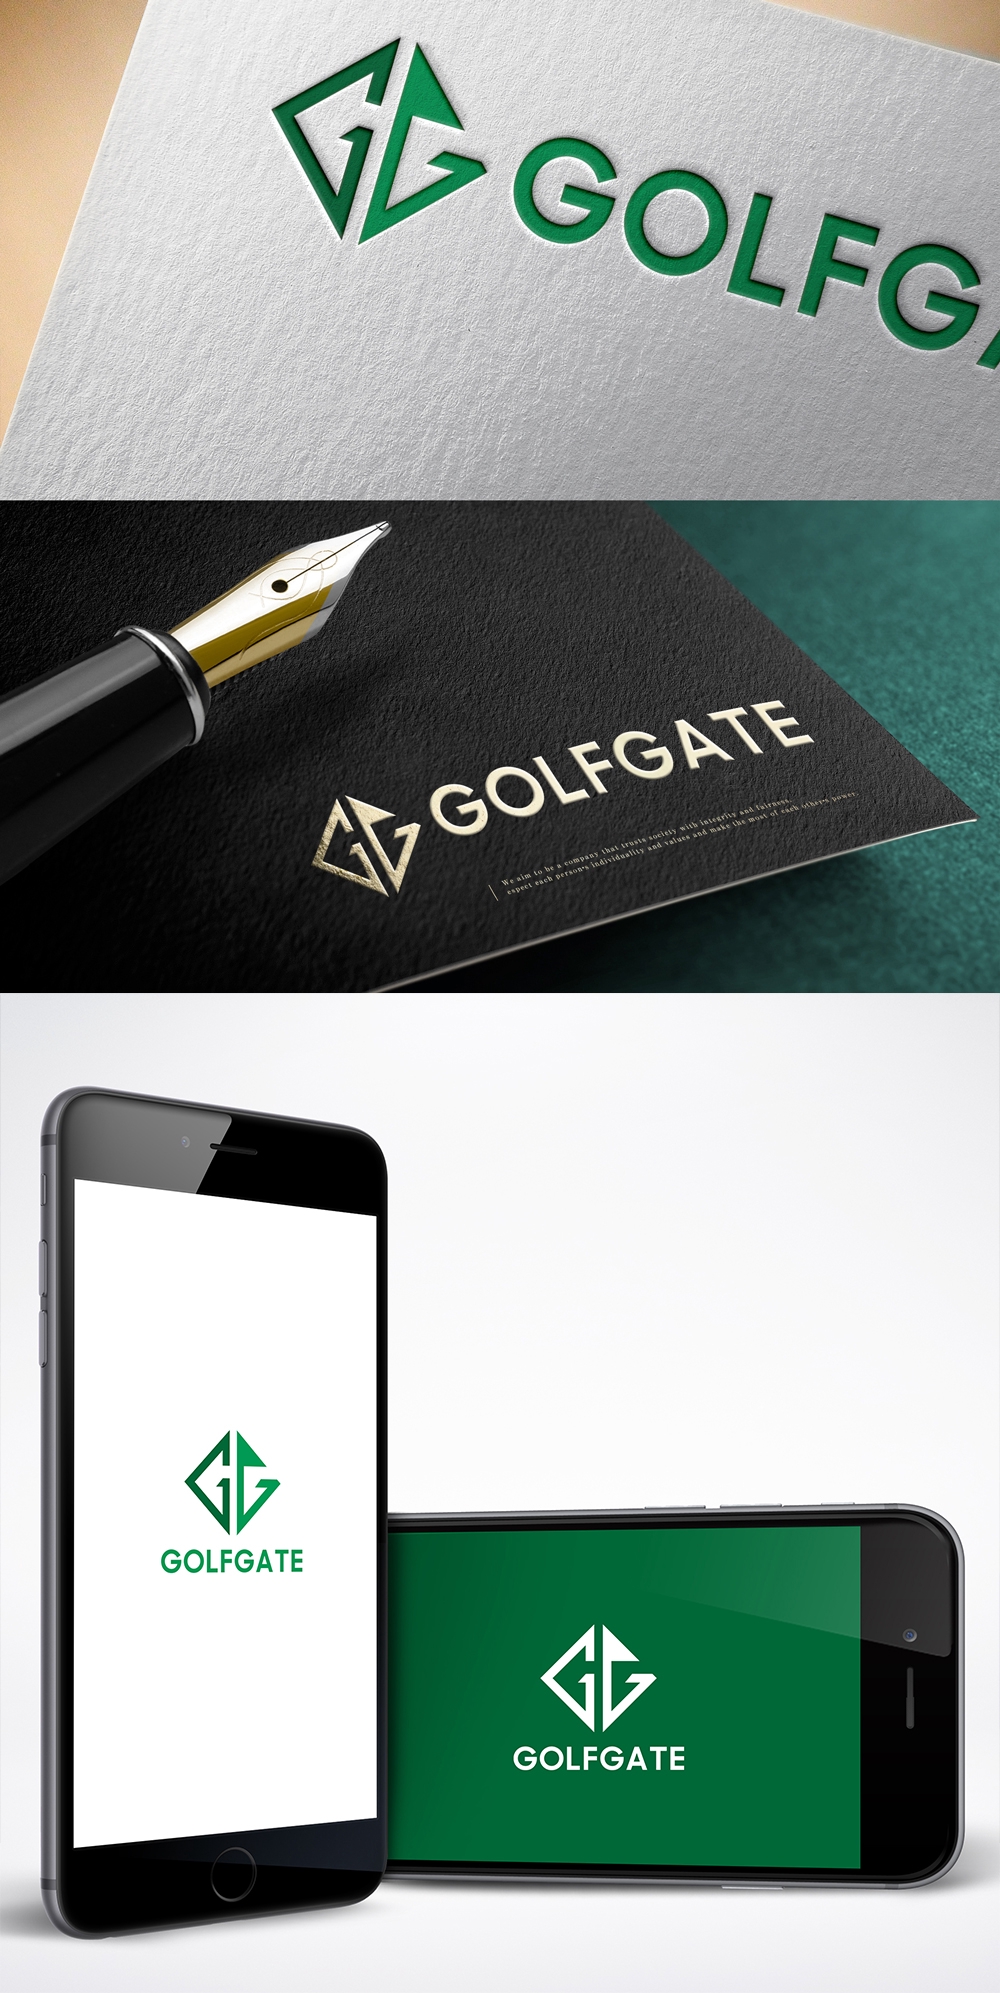 ゴルフマッチングサイト「GOLFGATE」のロゴ